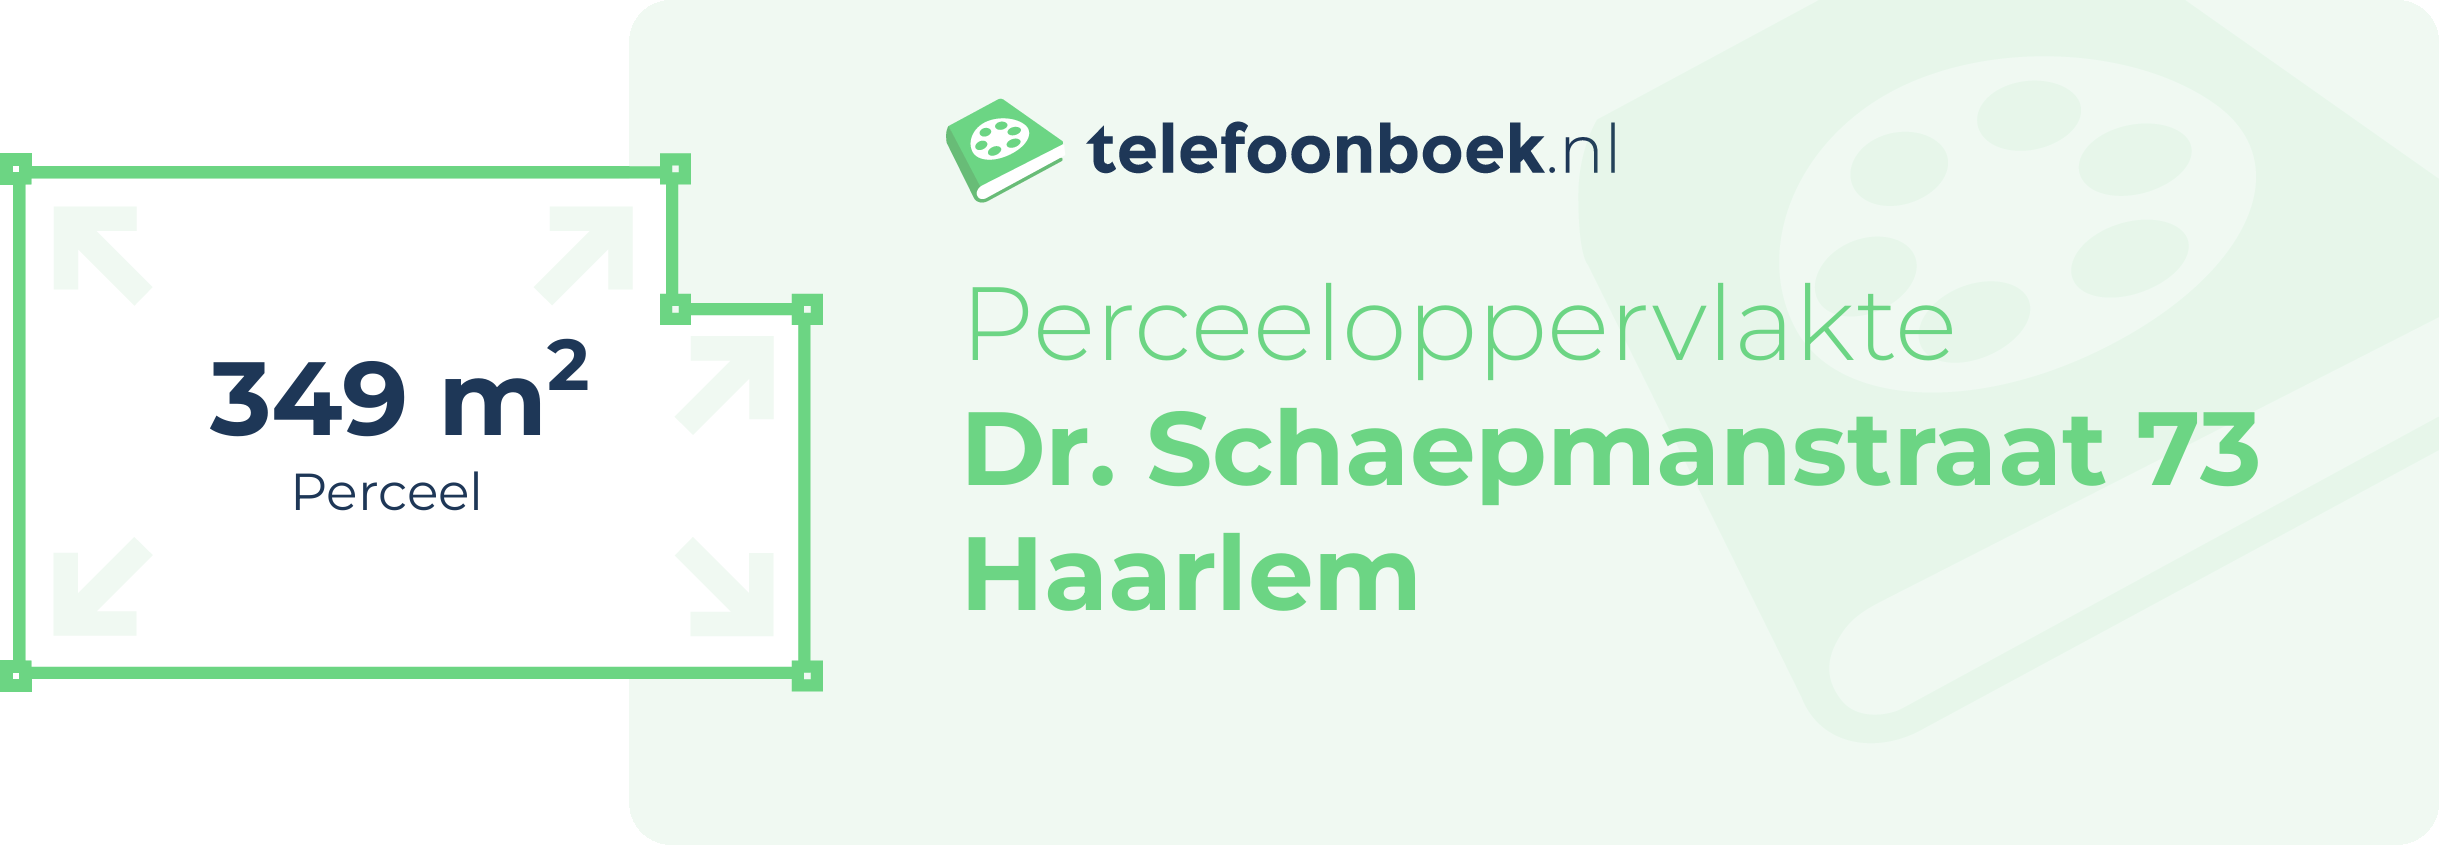 Perceeloppervlakte Dr. Schaepmanstraat 73 Haarlem